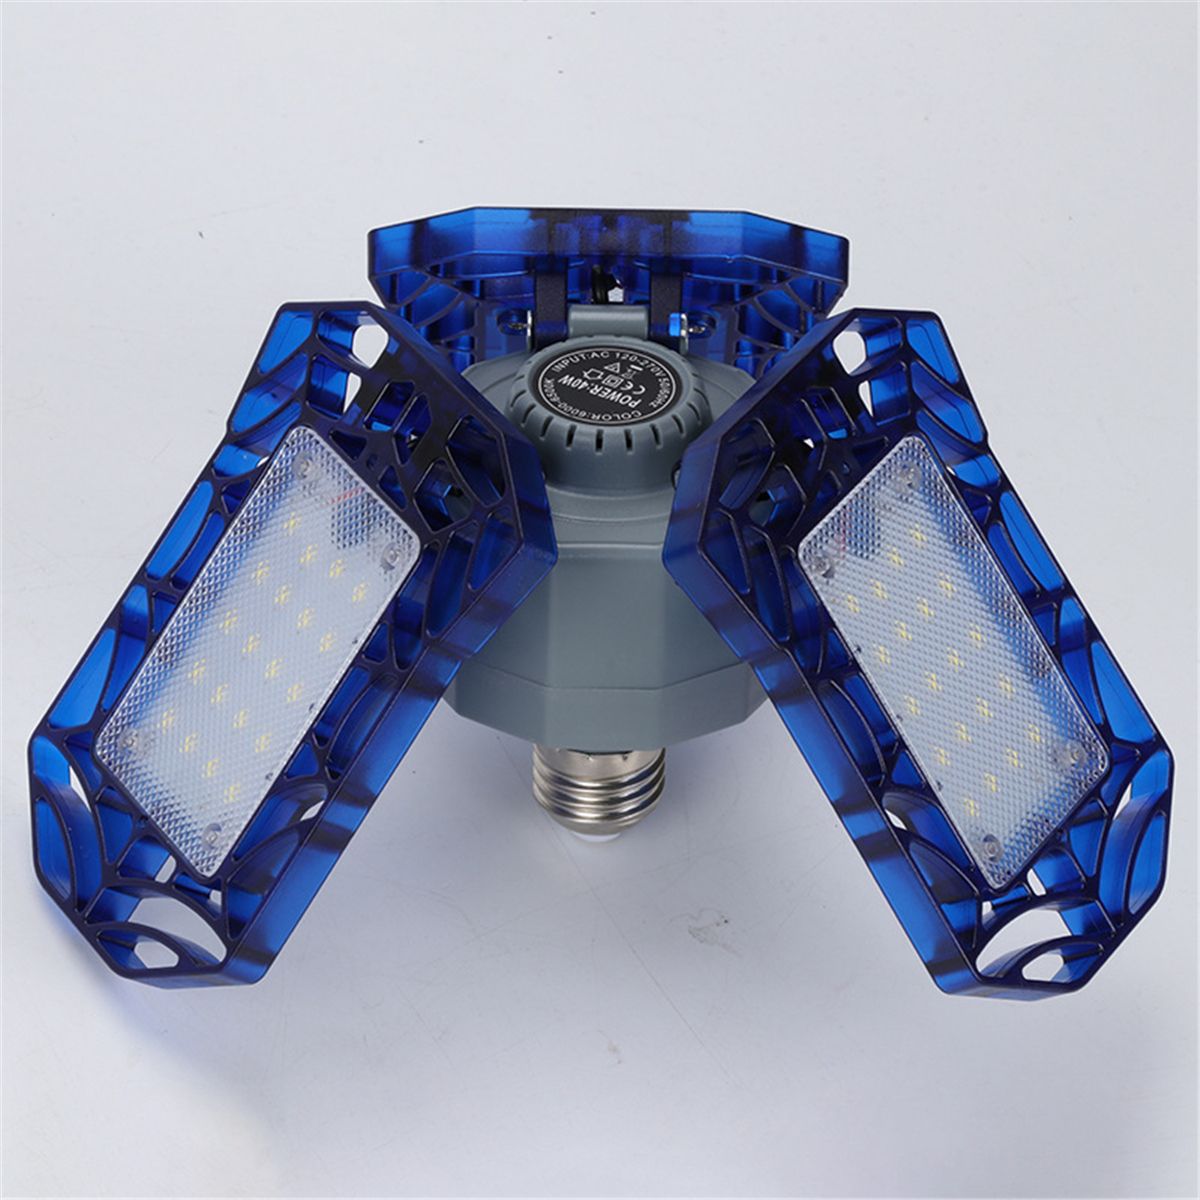 E27-LED-Bulb-40W-Deformable-Garage-Light-360degAngle-Foldable-Ceiling-Lamp-AC85-265V-1638991